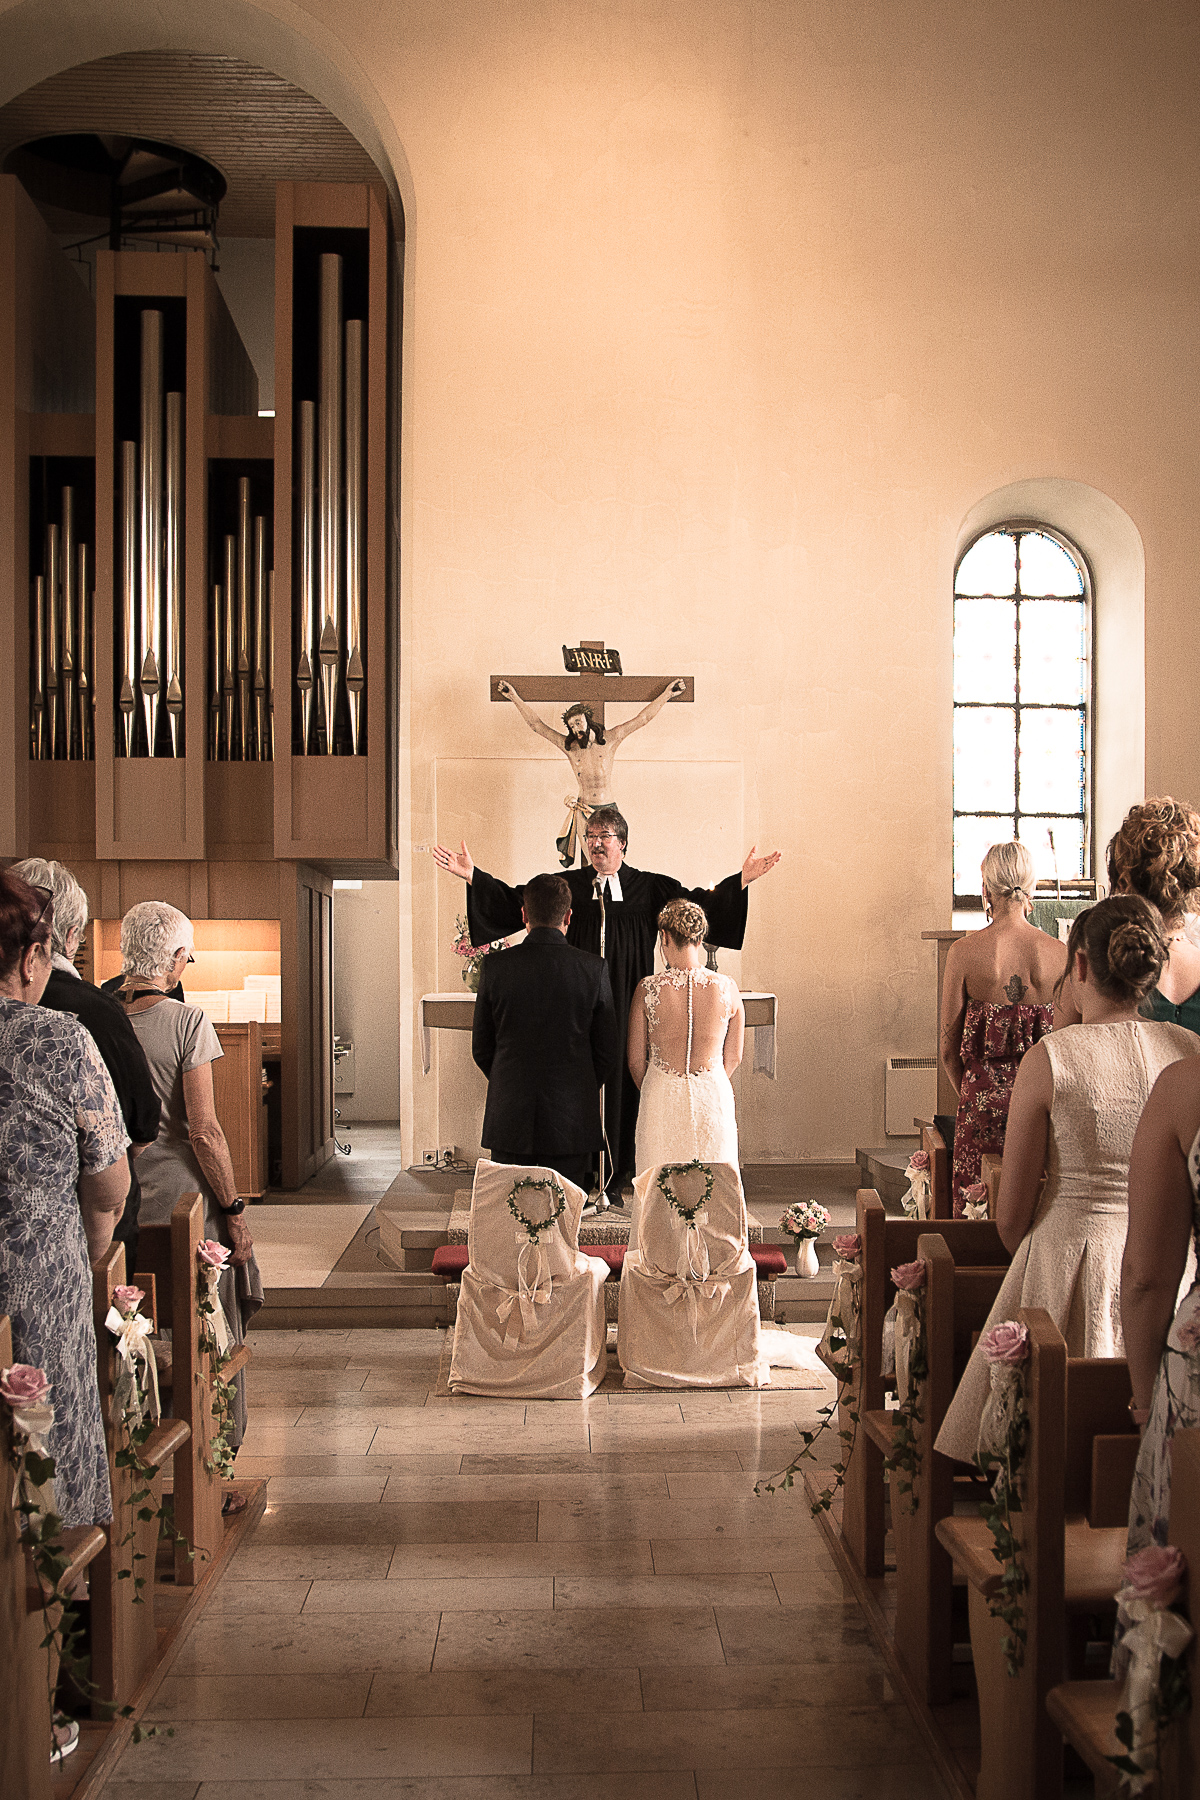 Während einer kirchlichen Trauung traut der Priester das Brautpaar, in dem er seine Hände über ihre Köpfe hochhält. Währenddessen stehen alle aufrecht, auch die Gäste.